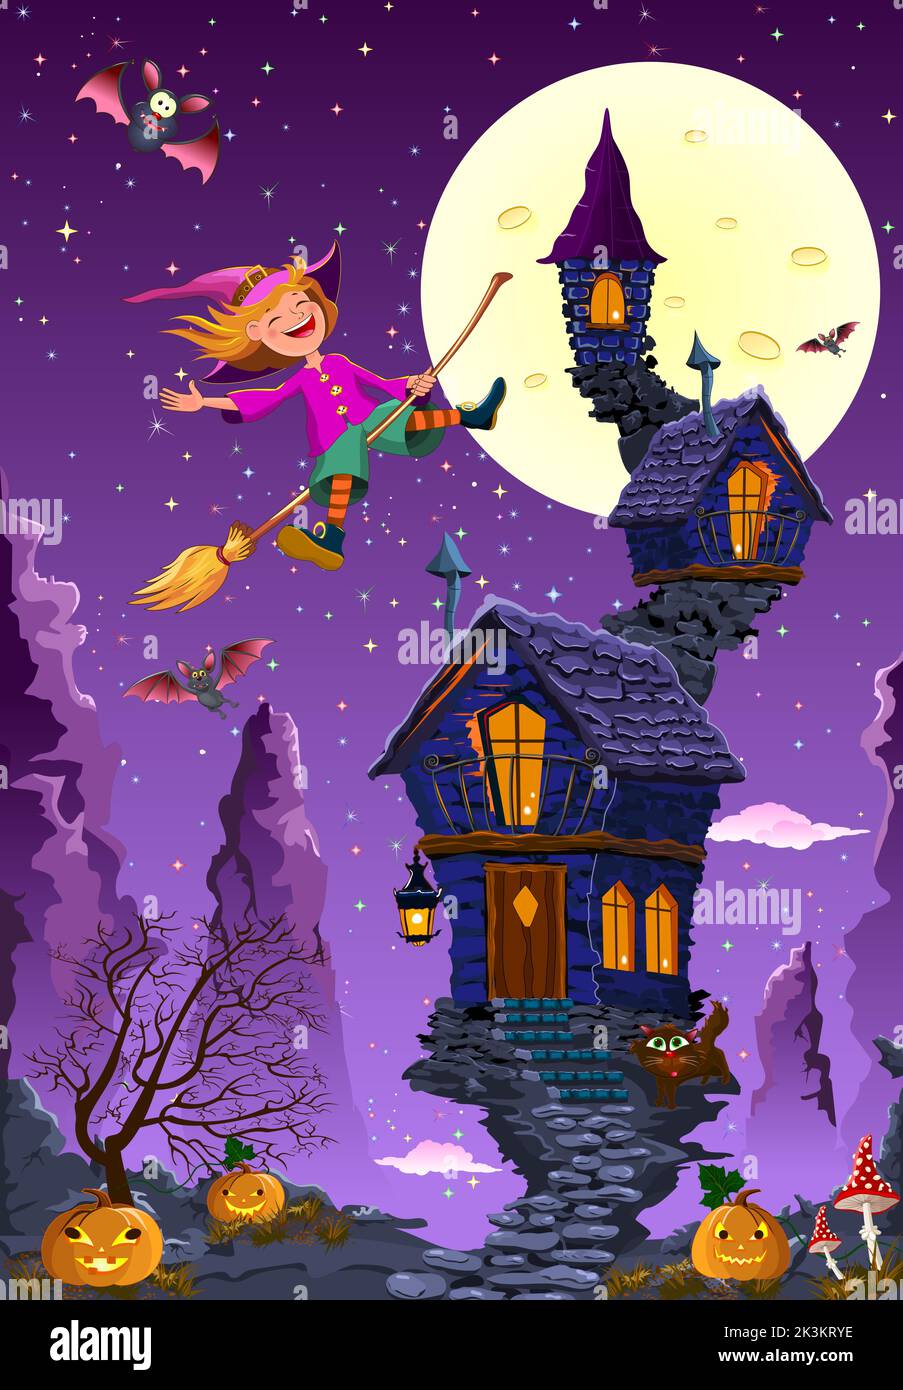 La piccola strega del cartone vola su una scopa sullo sfondo della sua casa e delle montagne rocciose. La luna piena è nel cielo notturno e nelle stelle Illustrazione Vettoriale